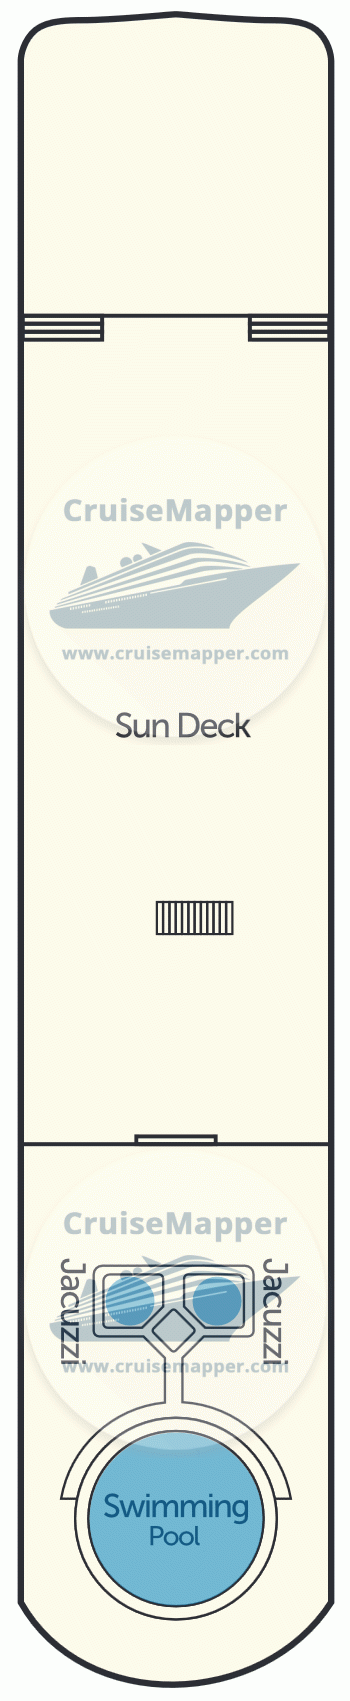 TUI Al Horeya Deck 05 - Sundeck-Pool